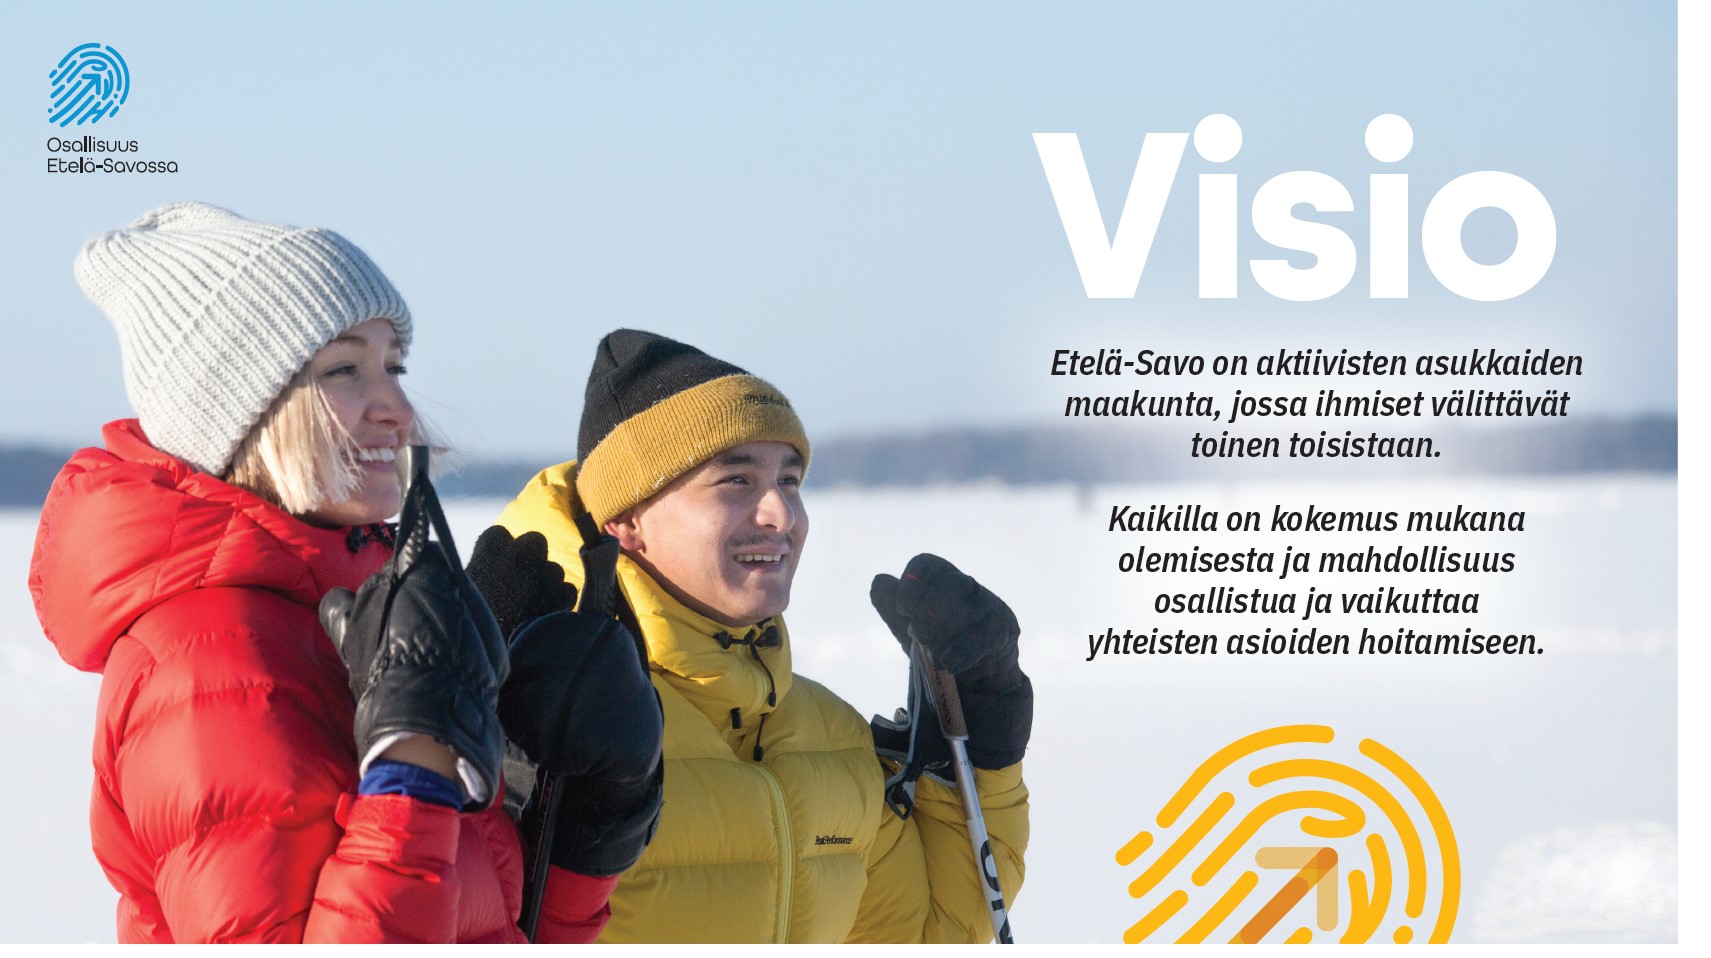 Visio. Etelä Savo on aktiivisten asukkaiden maakunta, jossa ihmiset välittävät toisistaan. Kaikilla on kokemus mukana olemisesta, mahdollisuus osallistua ja vaikuttaa yhteisten asioiden hoitamiseen.